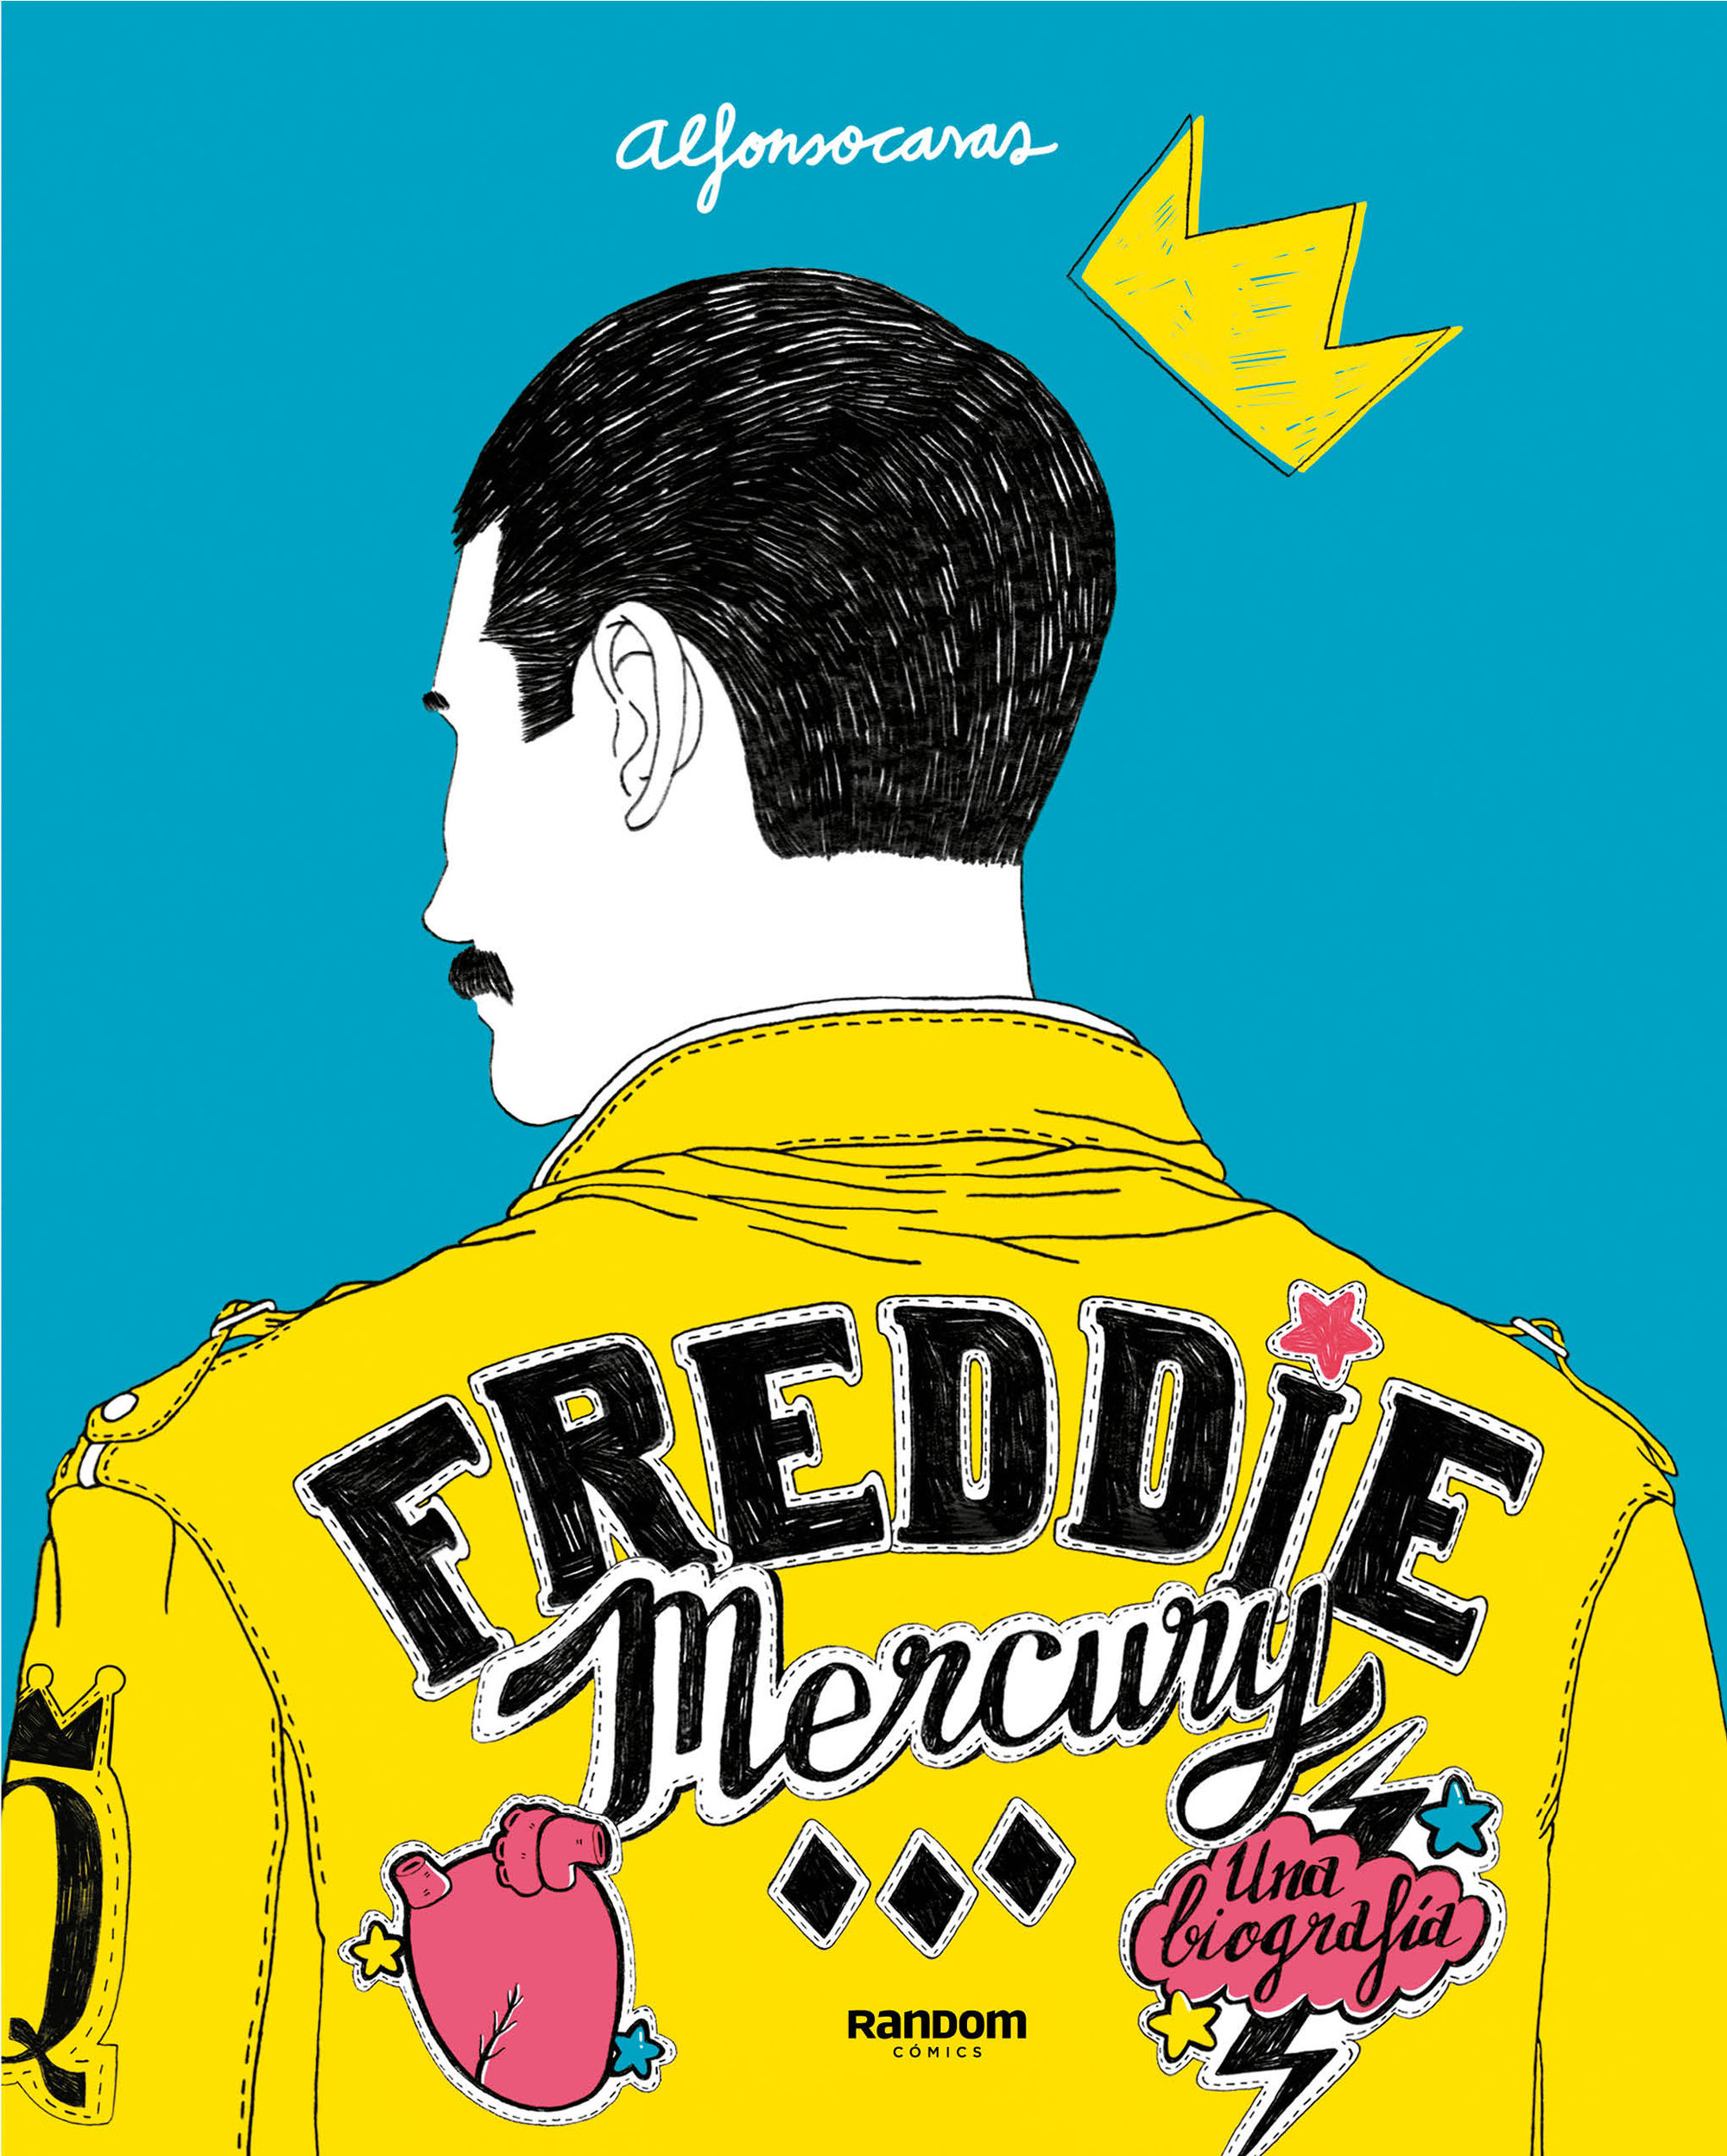 Imagen Freddie Mercury. Una biografía. Alfonso Casas 1